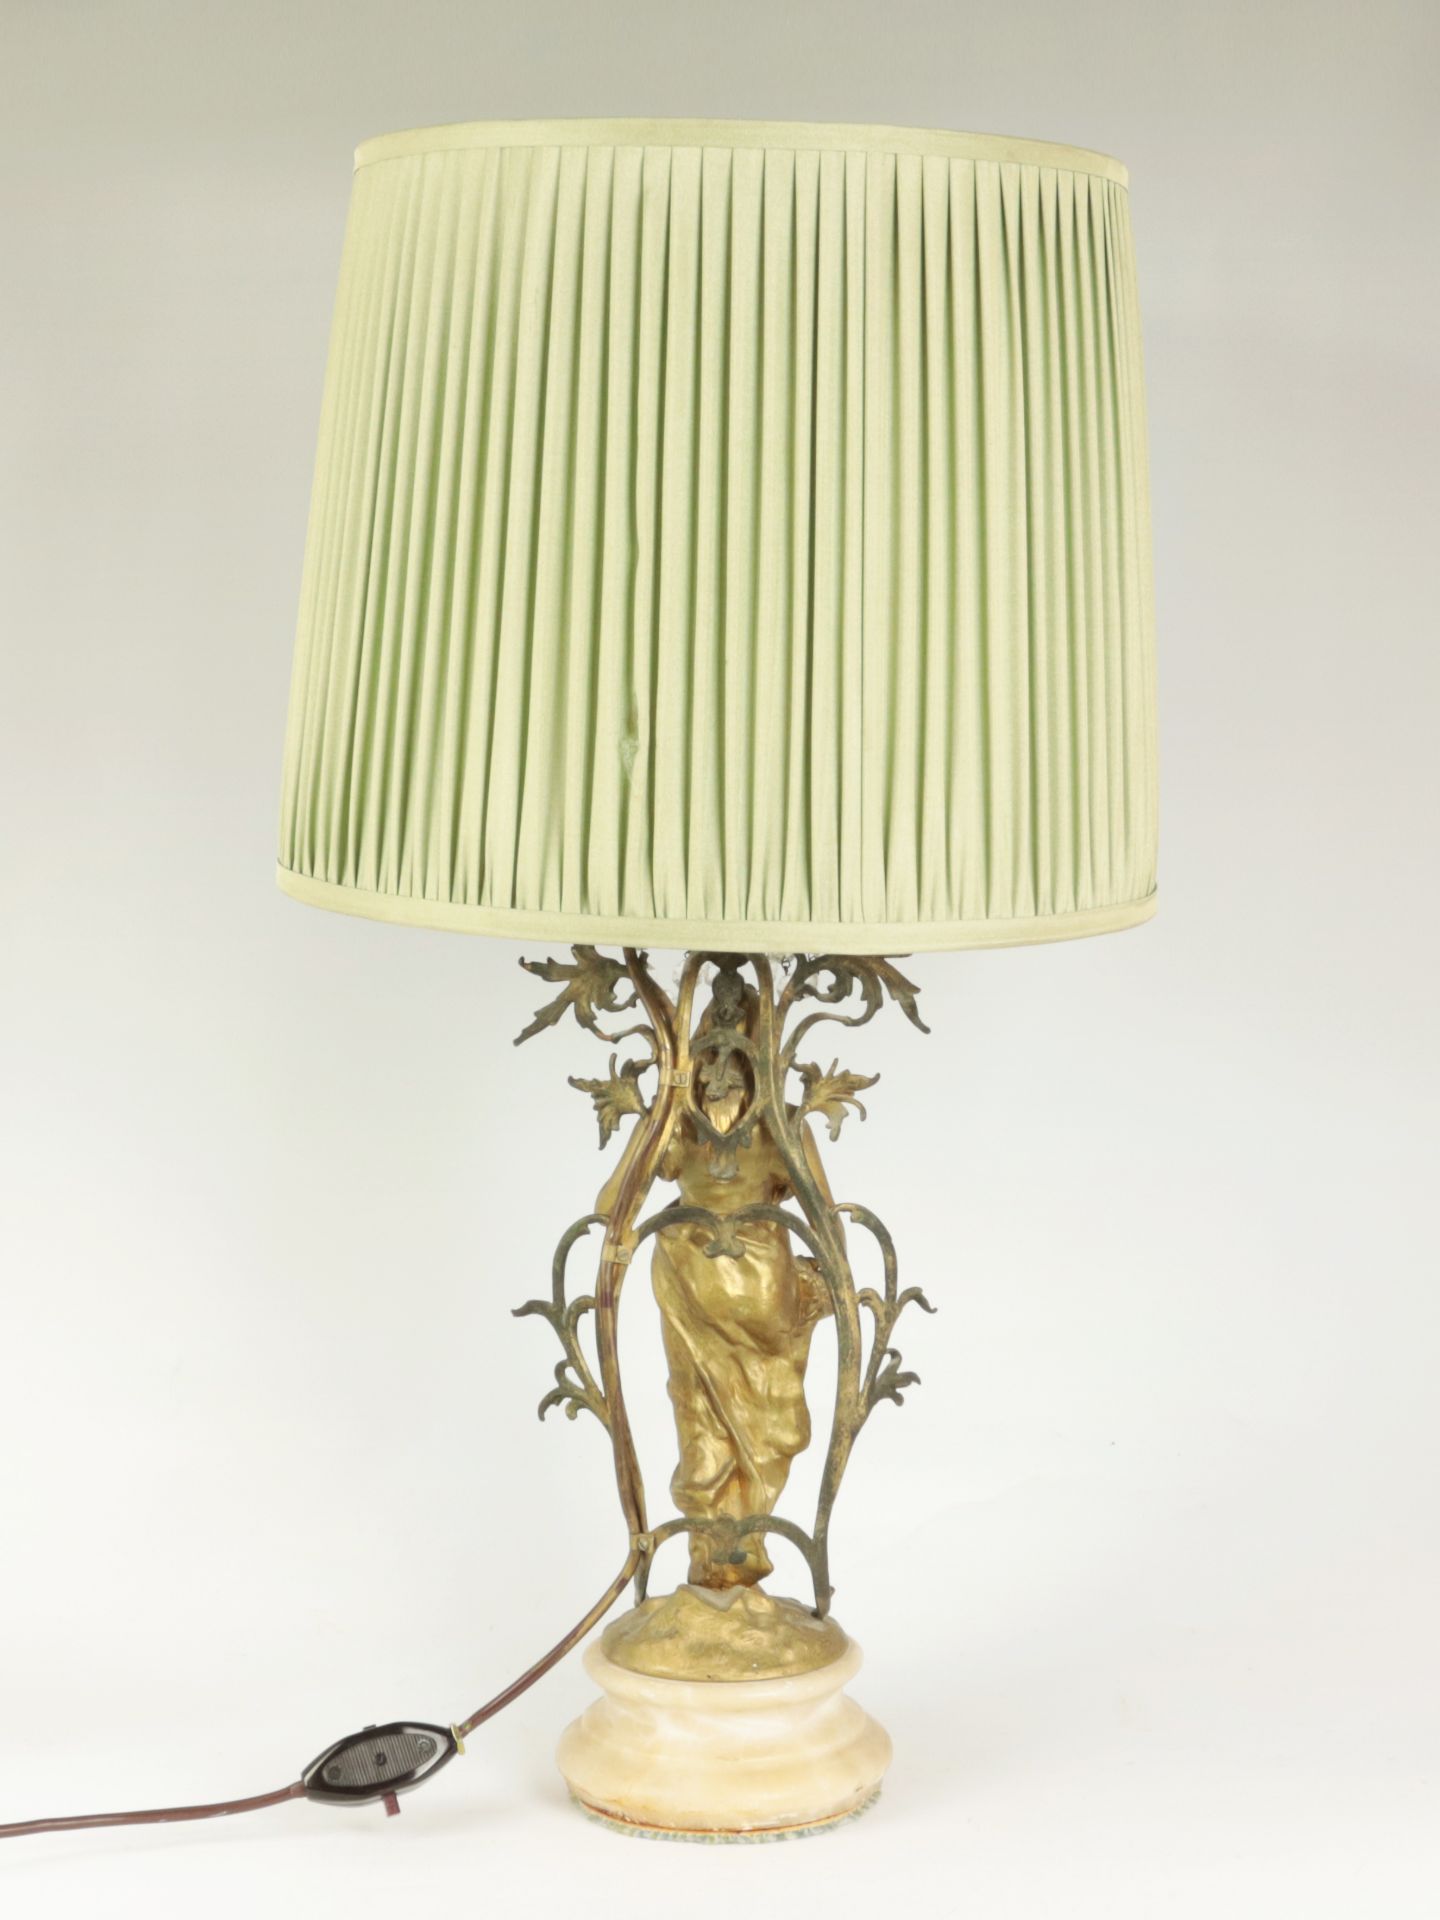 Jugendstil - Tischlampe wohl Zinnguss, goldfarben gefasst, einflammig, runder gewulsteter Sockel, - Image 2 of 10